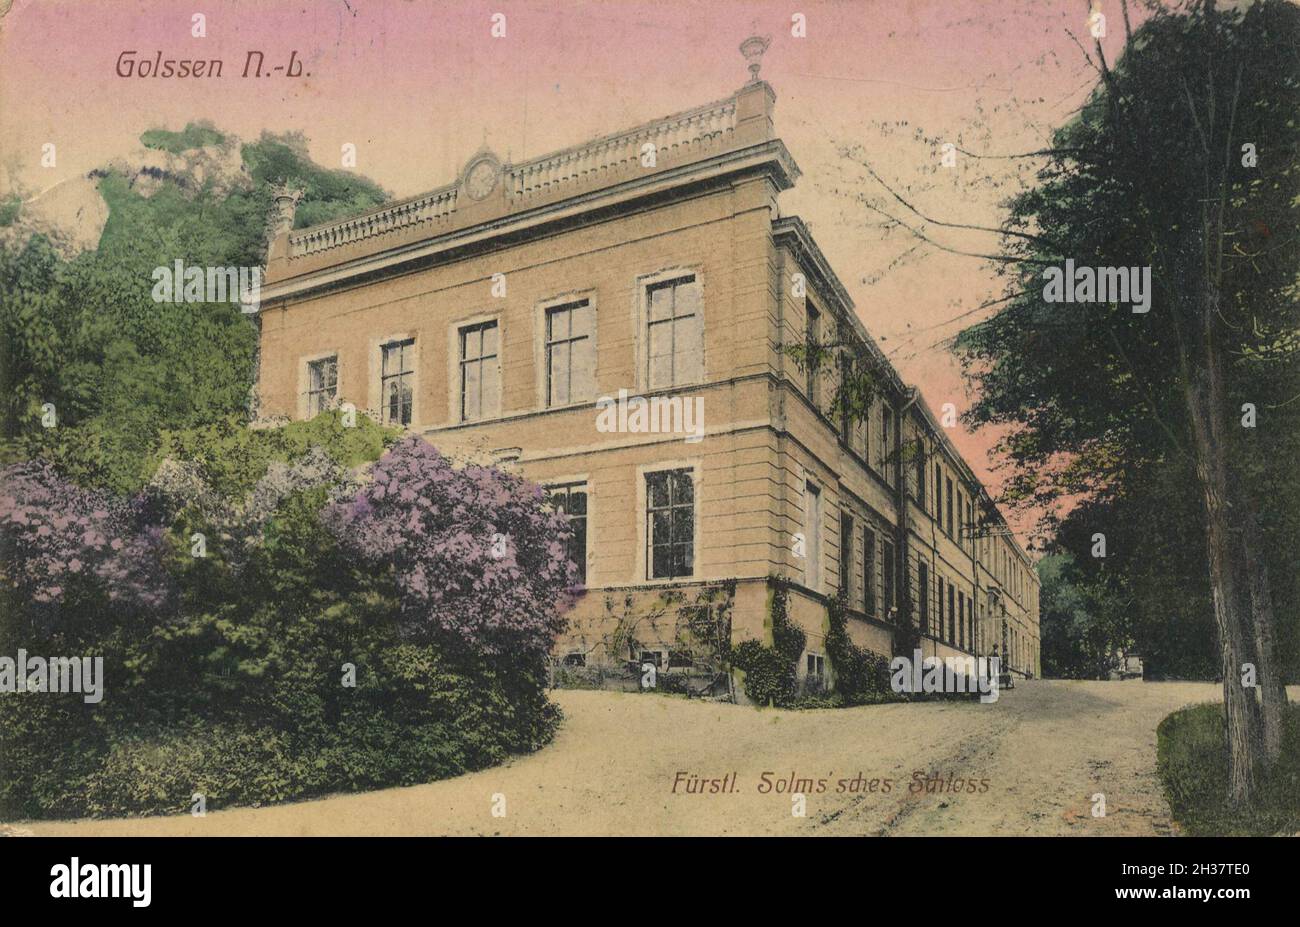 Solmsches Schloß in Goslar, Niedersachsen, Deutschland, Ansicht von ca 1910, digitale Reproduktion einer gemeinfreien Postkarte Banque D'Images